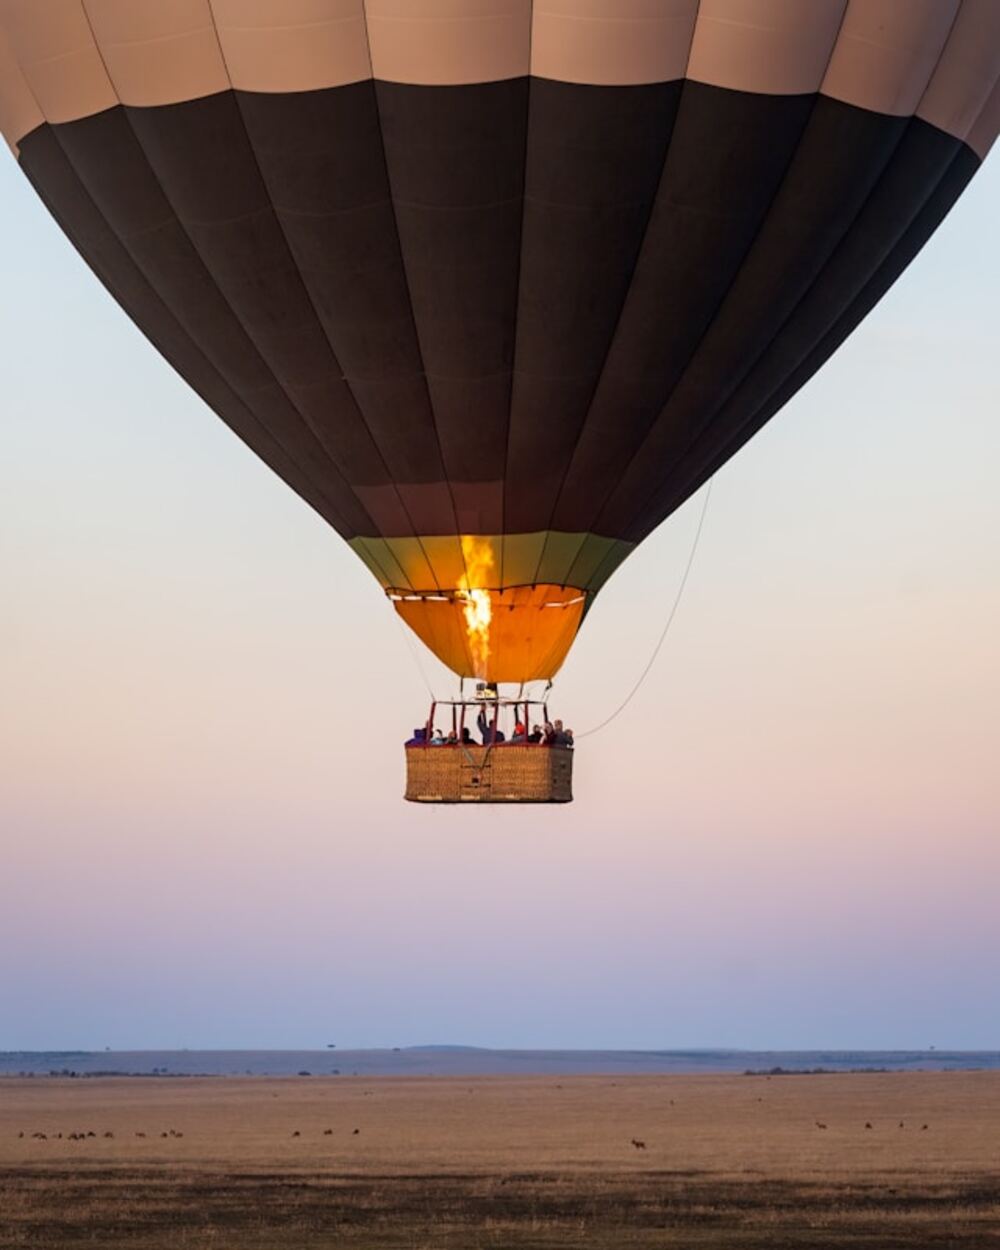 luchtballon vliegt in brand in volle vlucht: 3 doden